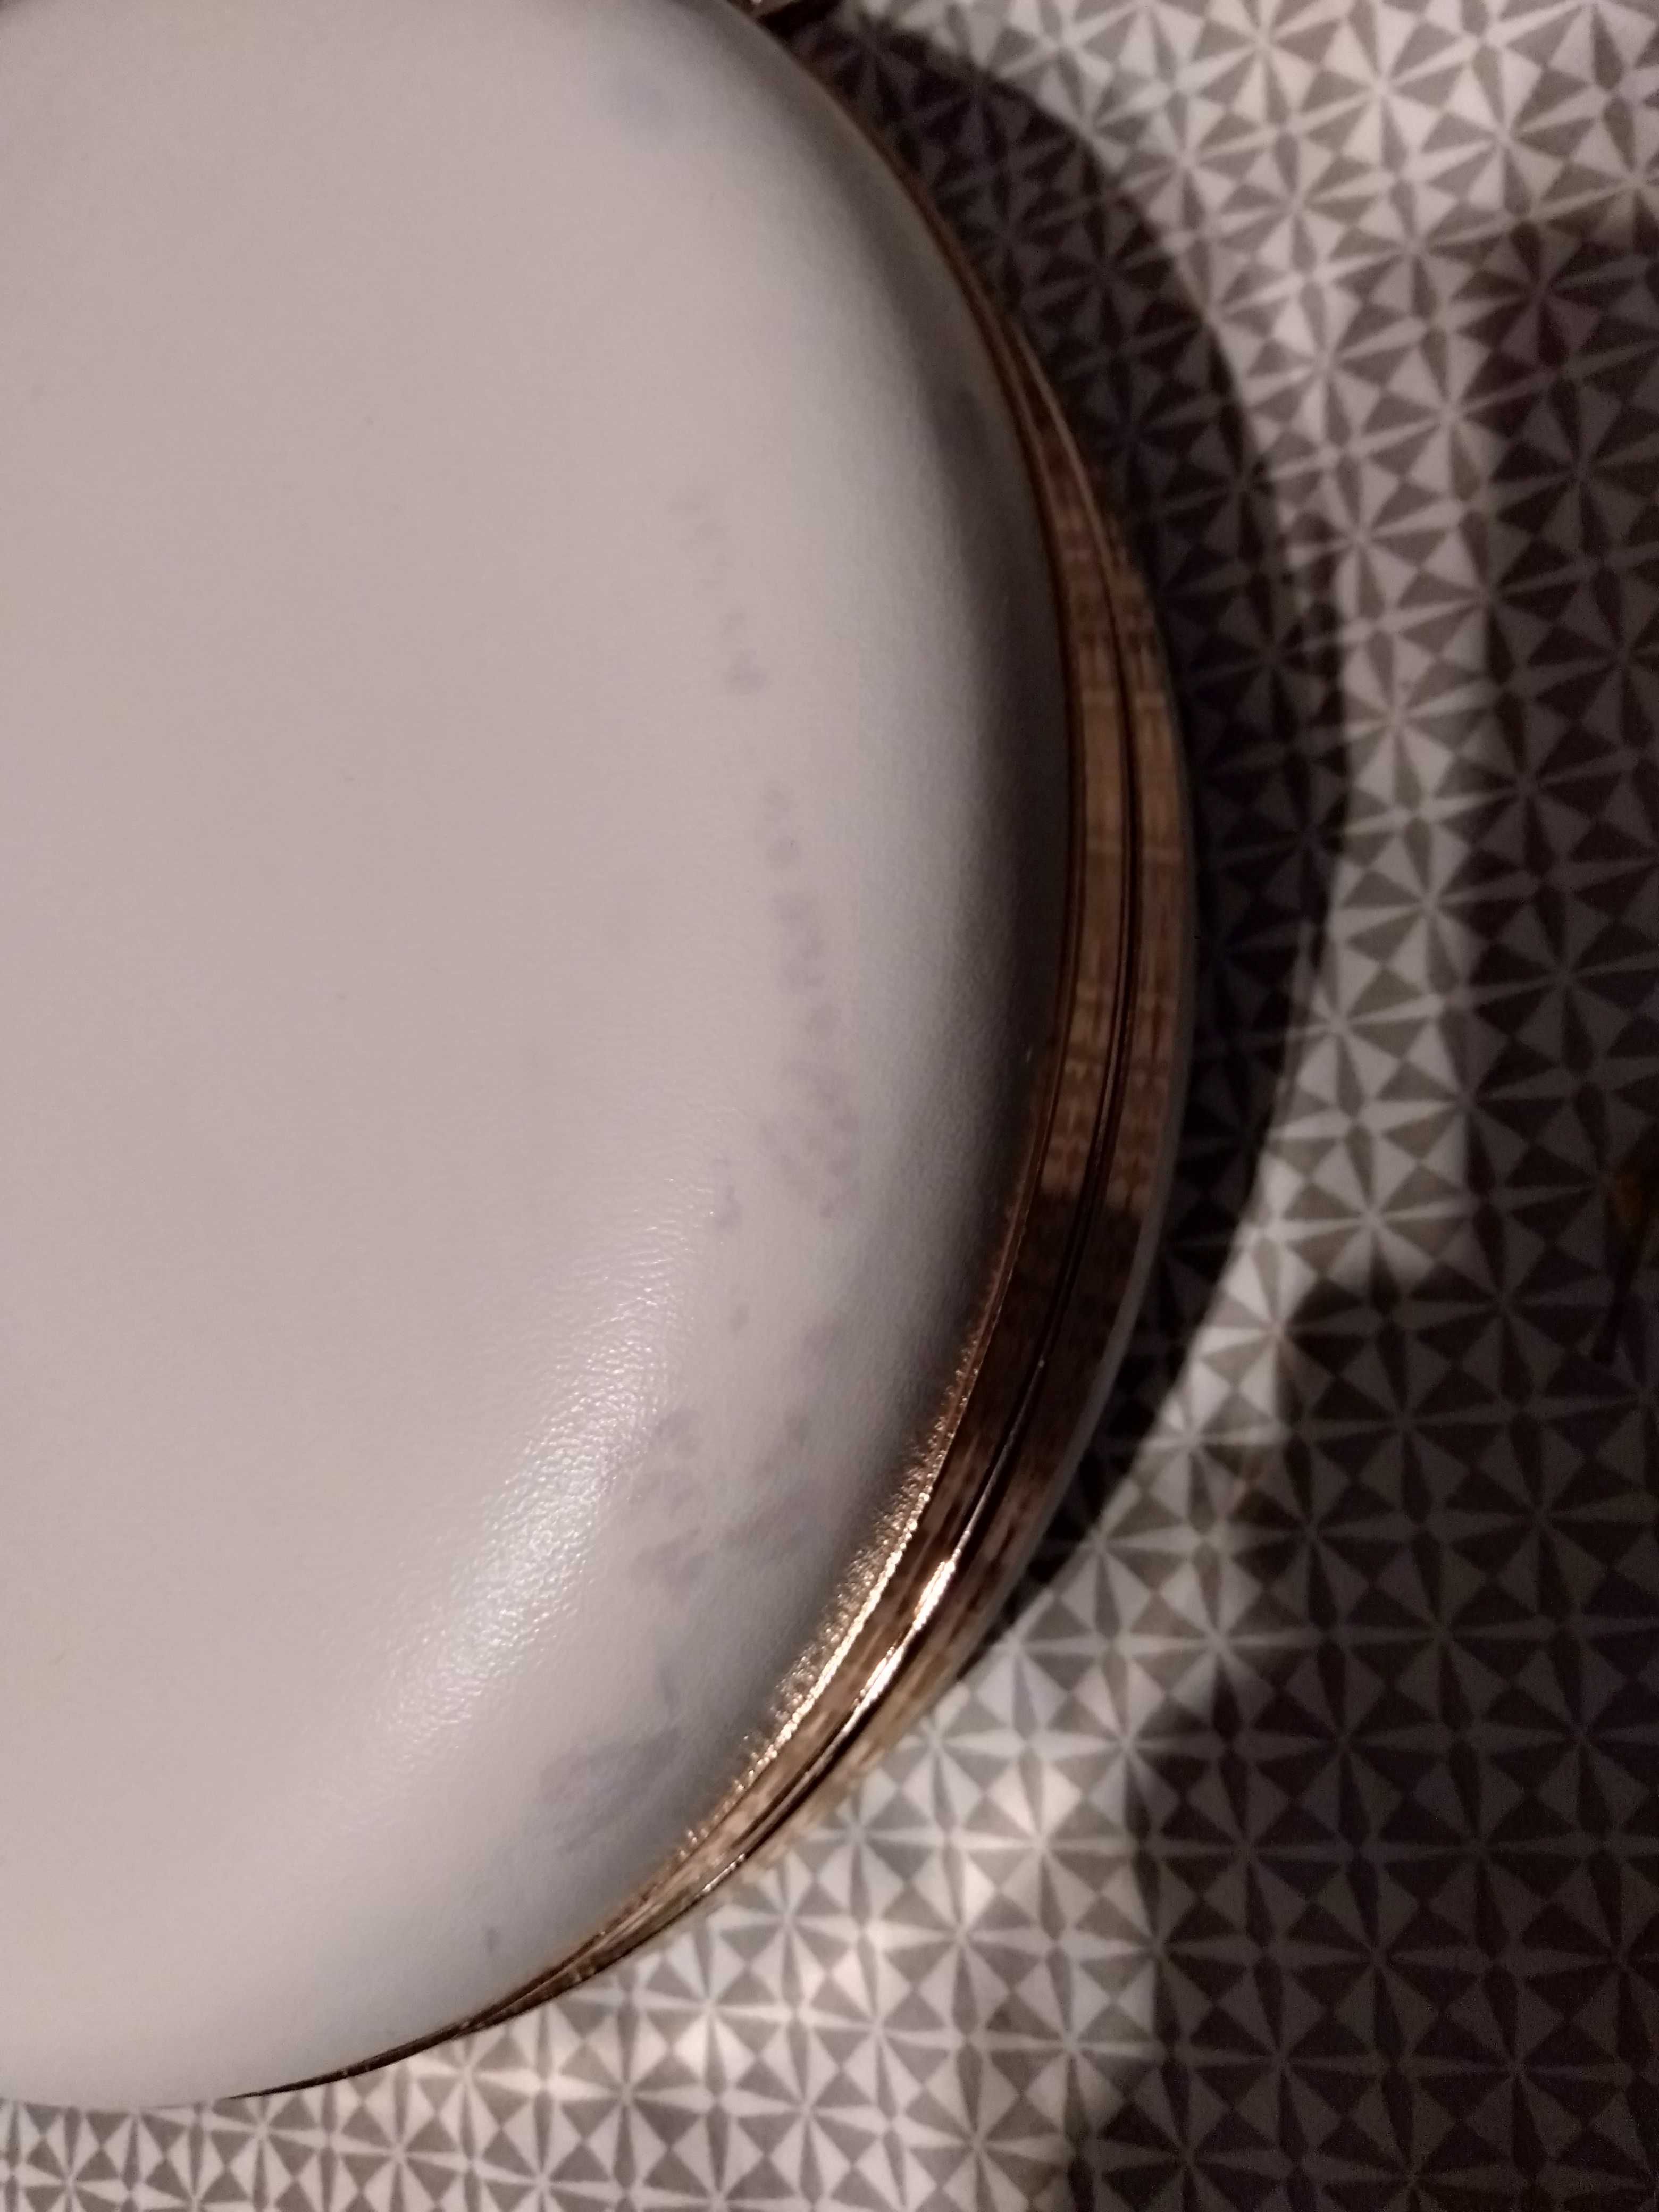 Torebka biała okrągła pojemna 18 cm